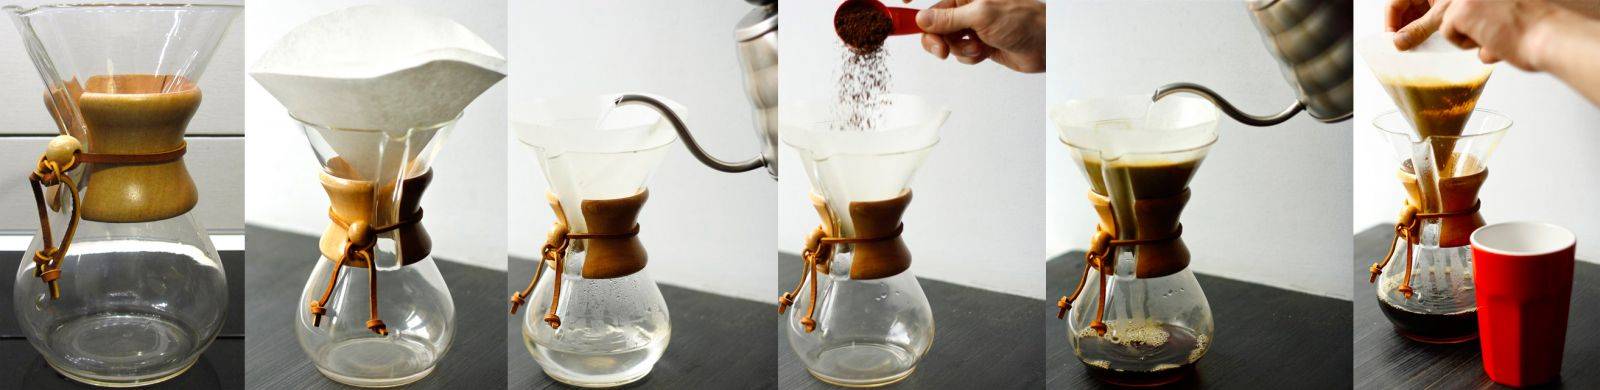 Как правильно заваривать растворимый кофе